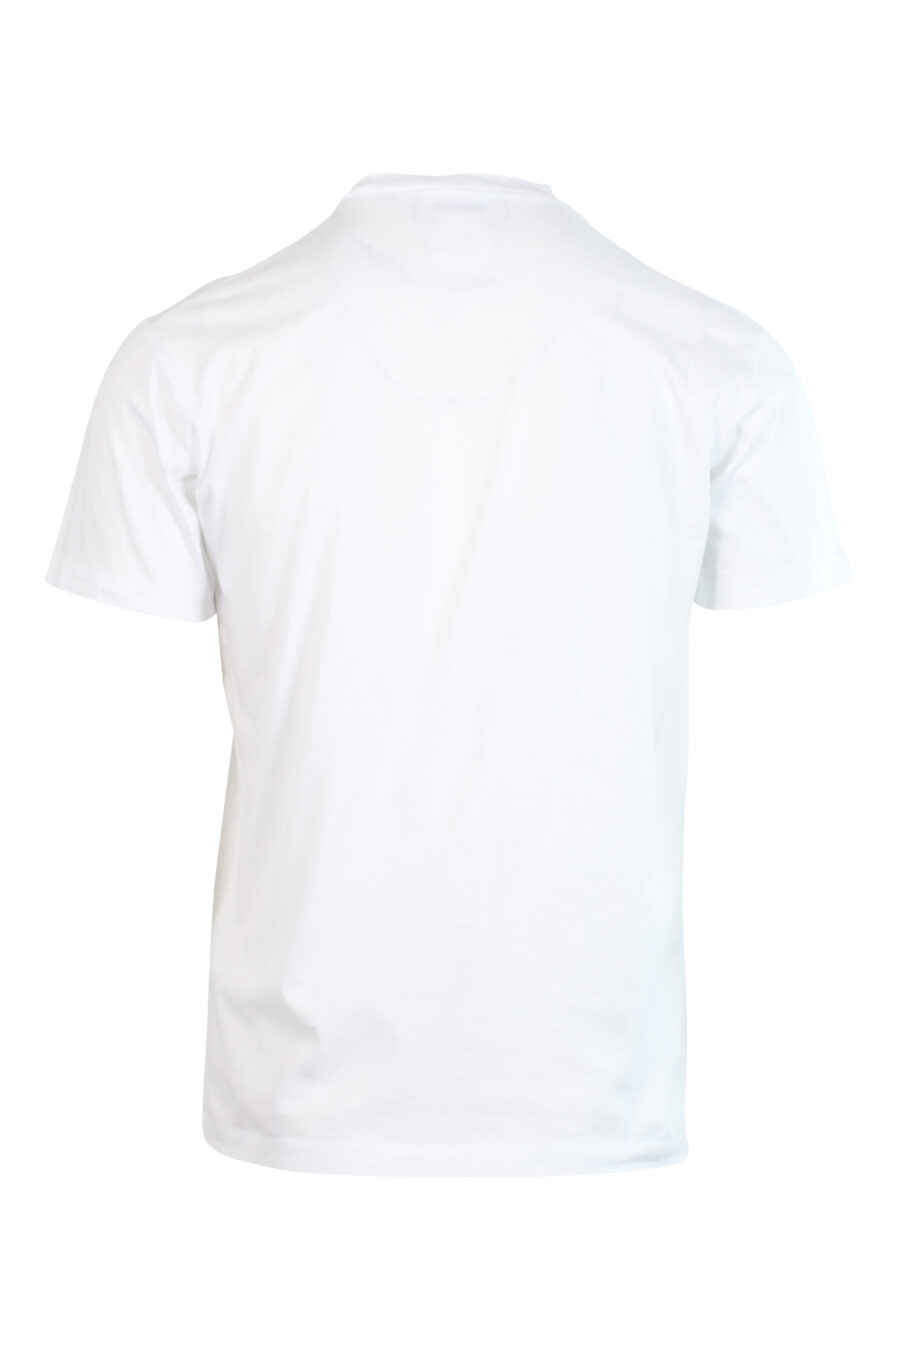 T-shirt branca com logótipo monocromático - 8052134946381 2